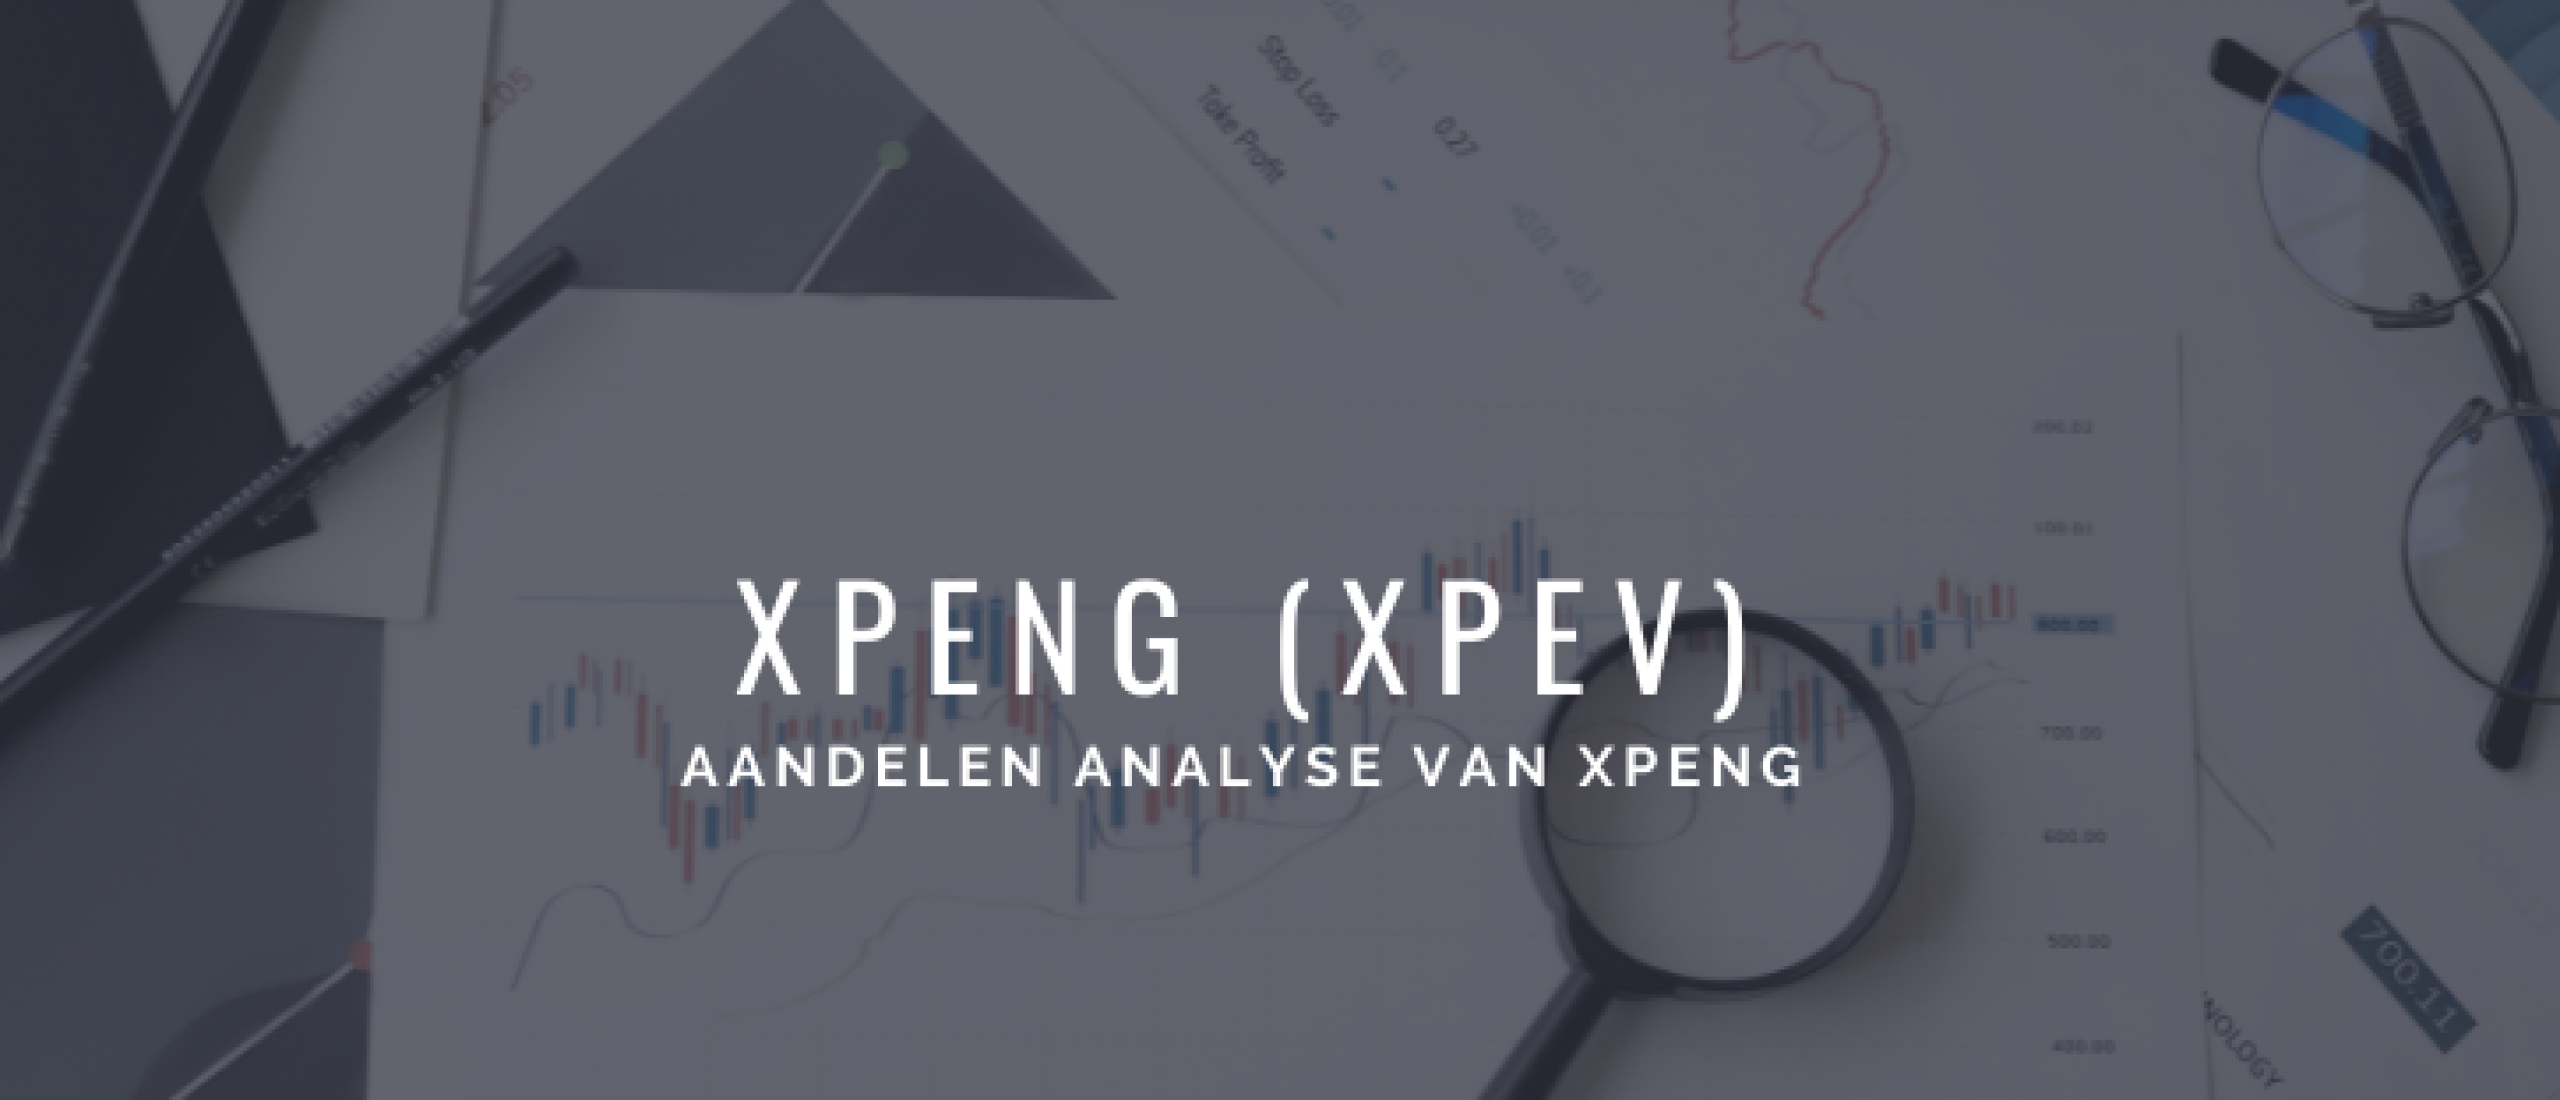 Aandeel Xpeng (XPEV) Analyse: Koersverwachting, Risico's, Strategie [2022]